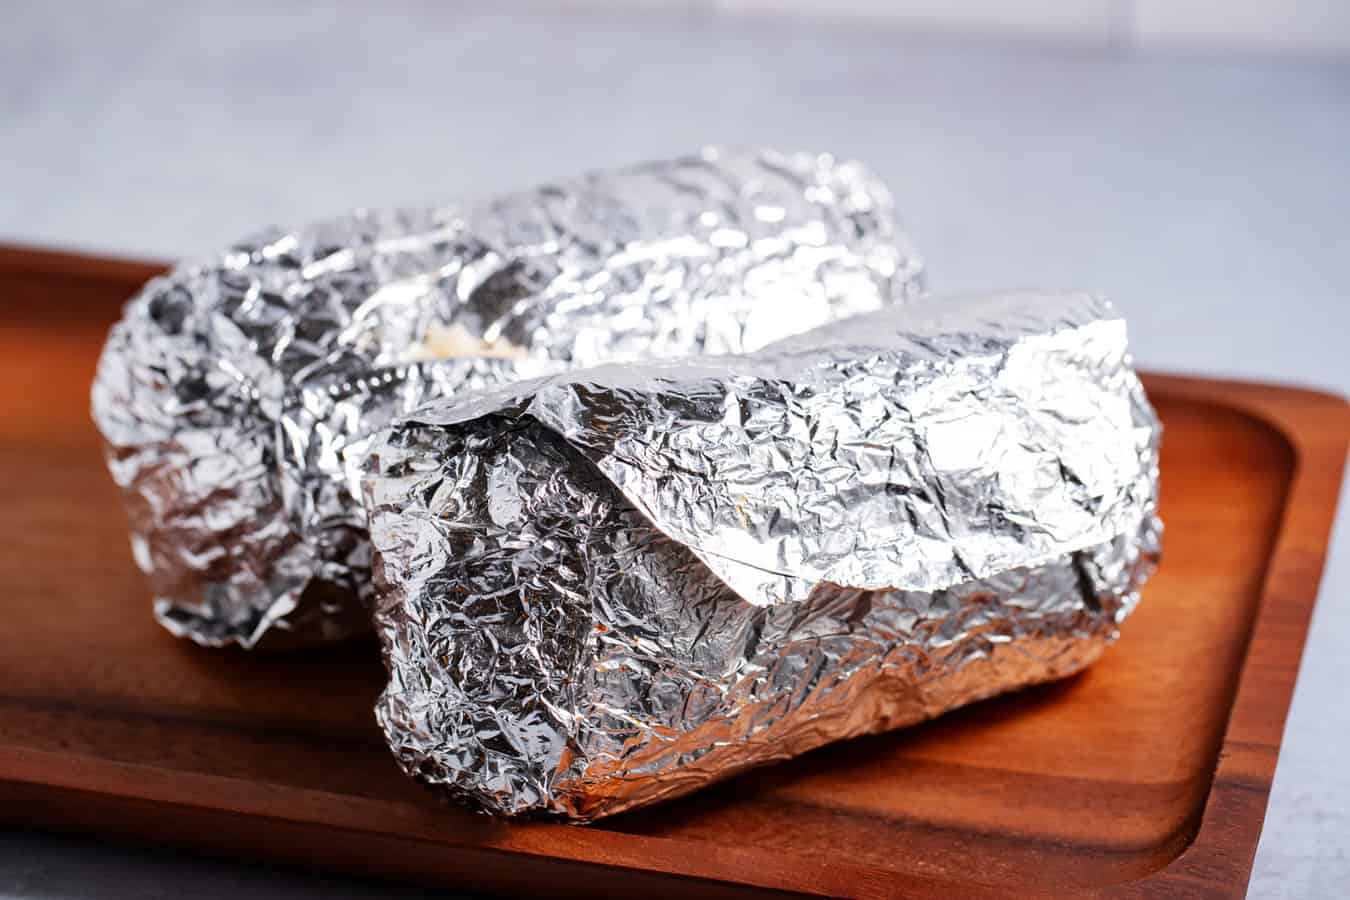 2 burritos wrapped in aluminum foil